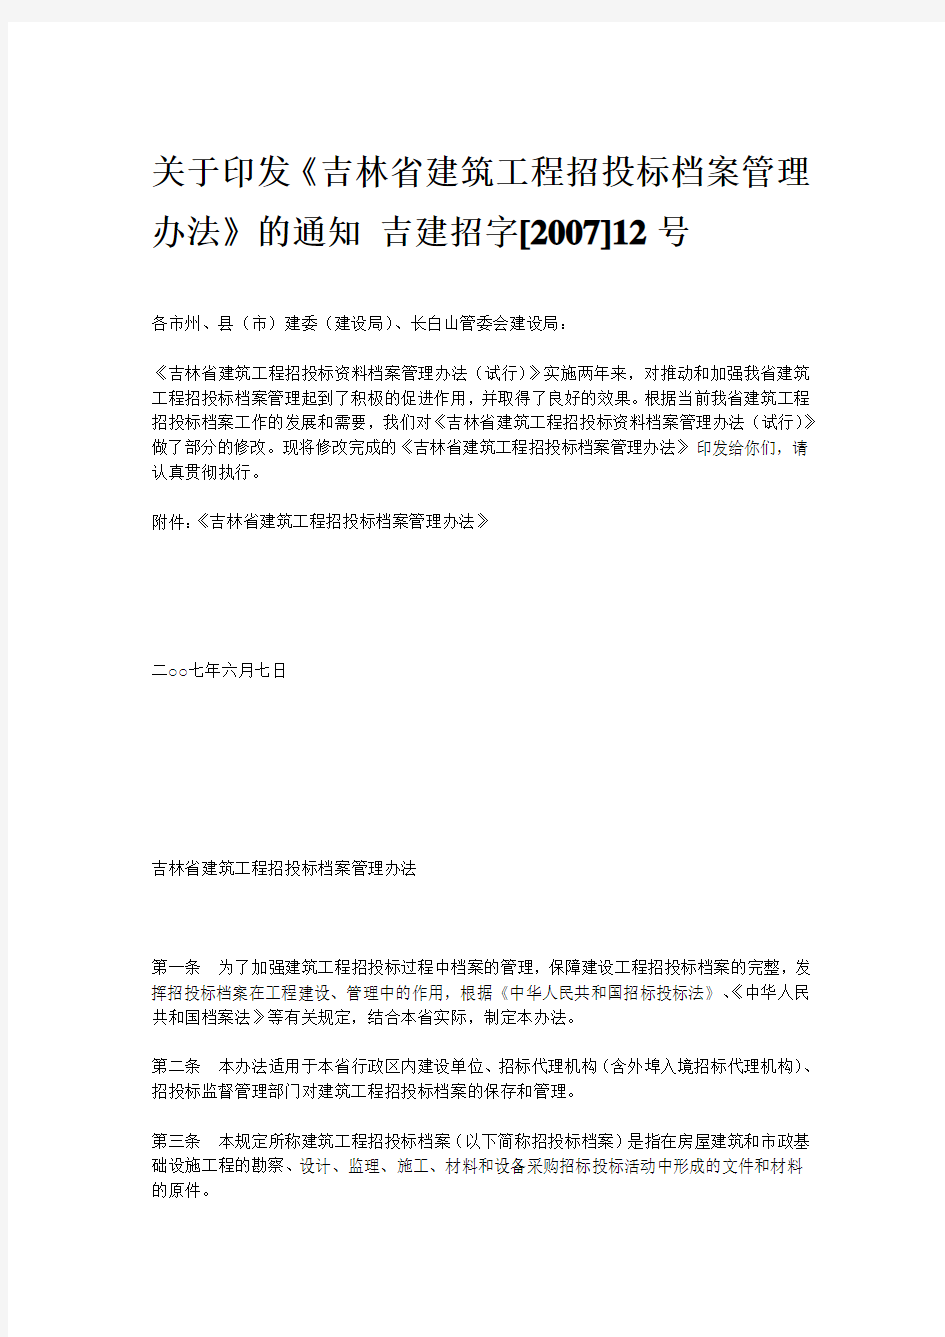 吉林省建筑工程招投标档案管理办法的通知吉建招字[2007]12号